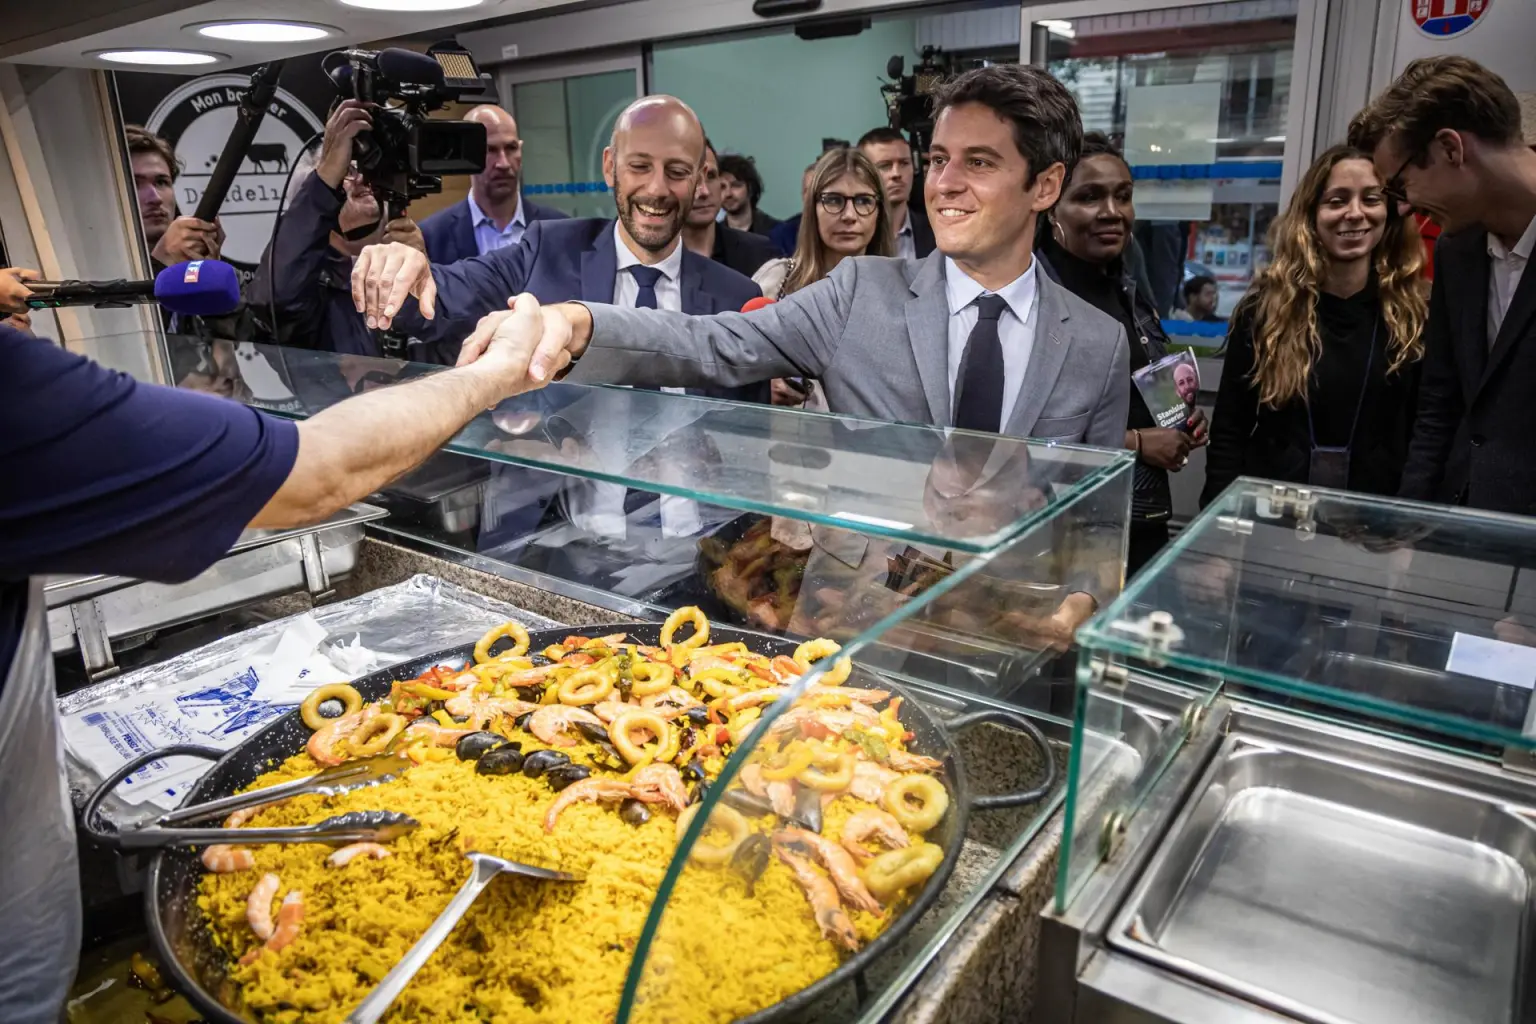 El primer Ministro francés Gabriel Attal (C) visita un mercado de alimentos con el candidato del partido mayoritario presidencial. EFE//CHRISTOPHE PETIT TESSON